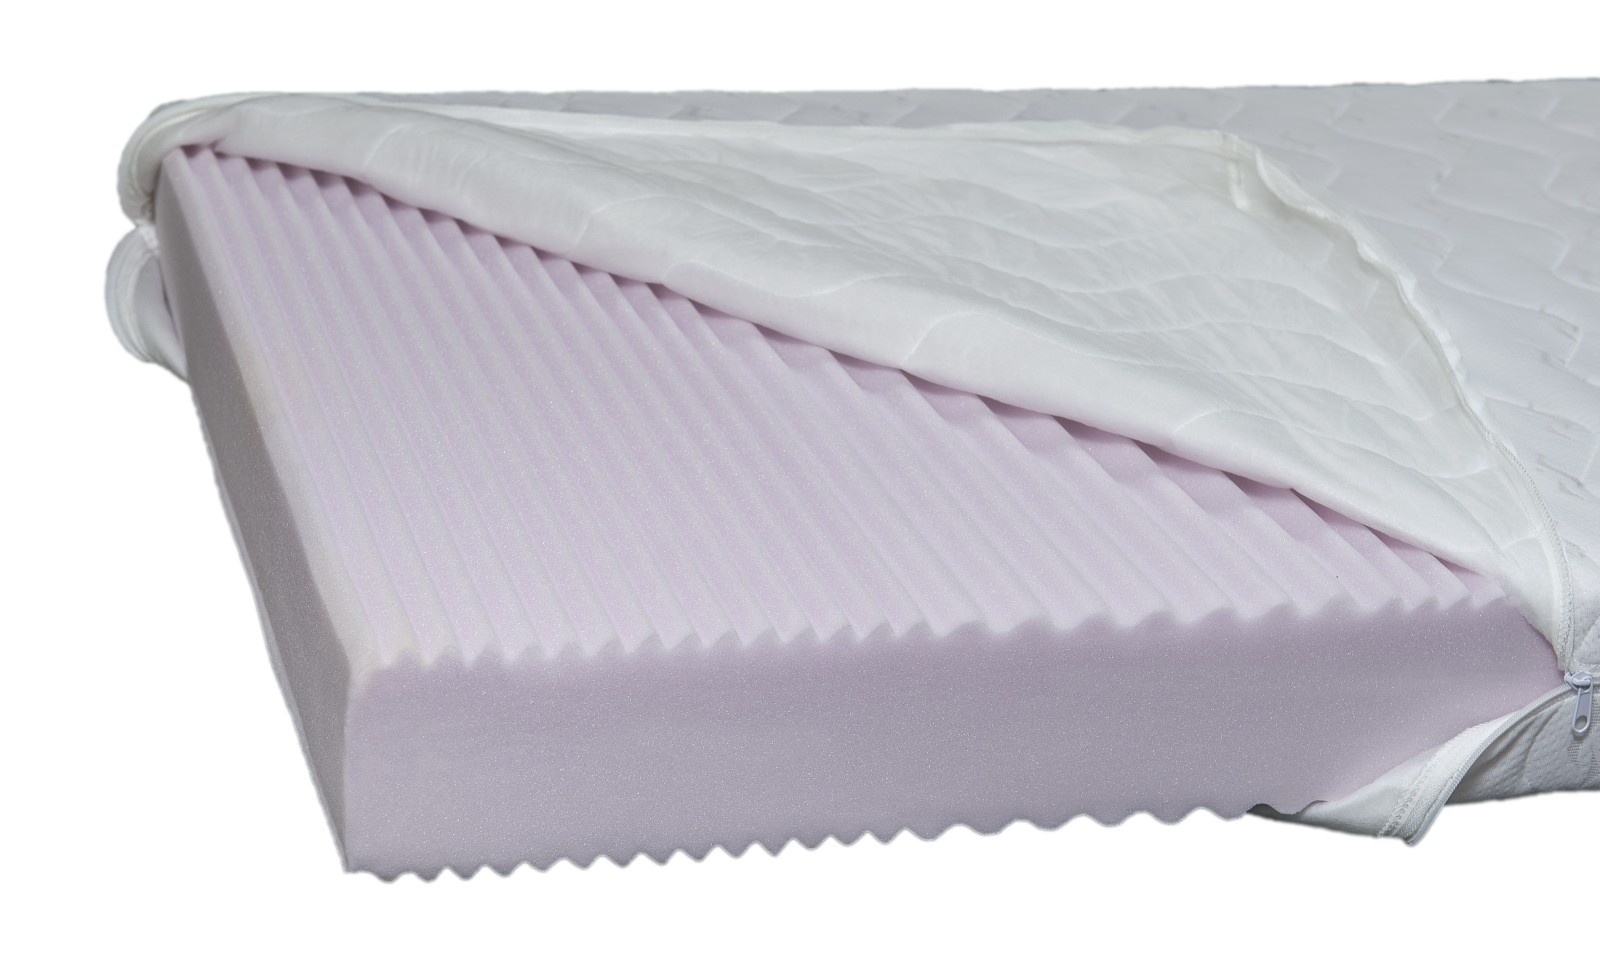 allintitle:foam for baby mattress